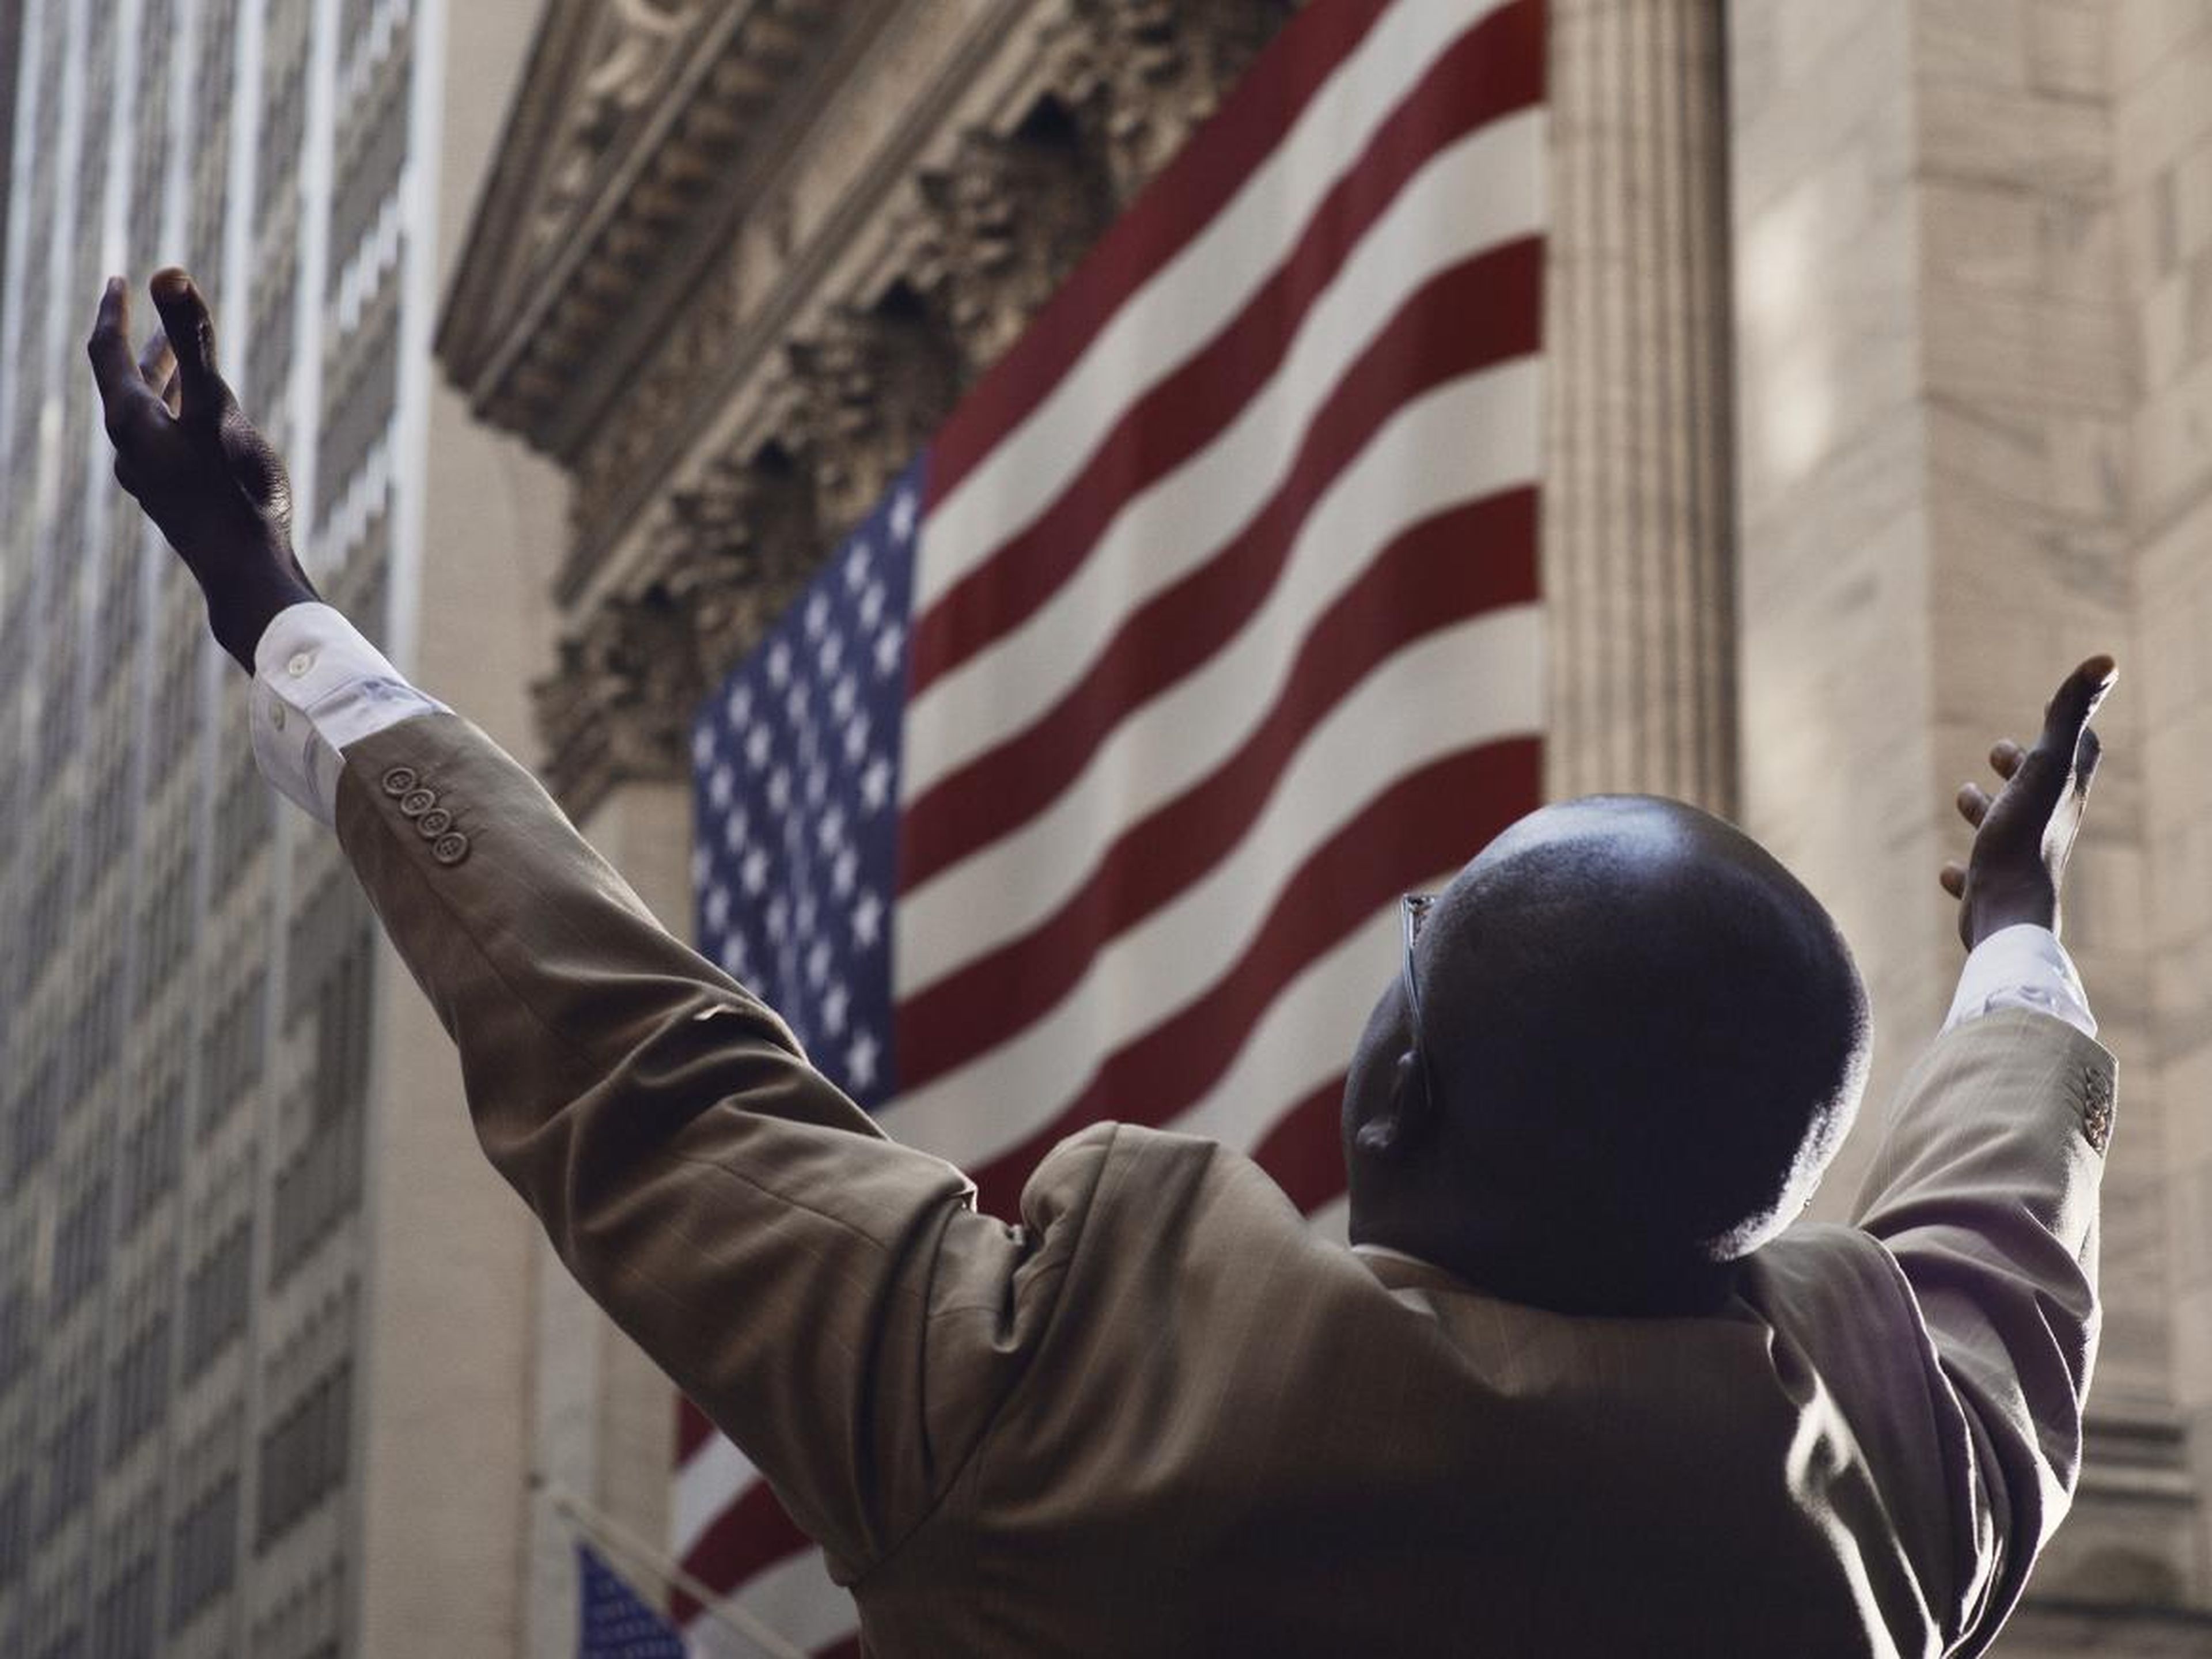 Aquí, un predicador callejero en la ciudad de Nueva York apela a Wall Street para que se arrepientan. En opinión de Little, esta es "una de las imágenes icónicas de las finanzas en Estados Unidos".